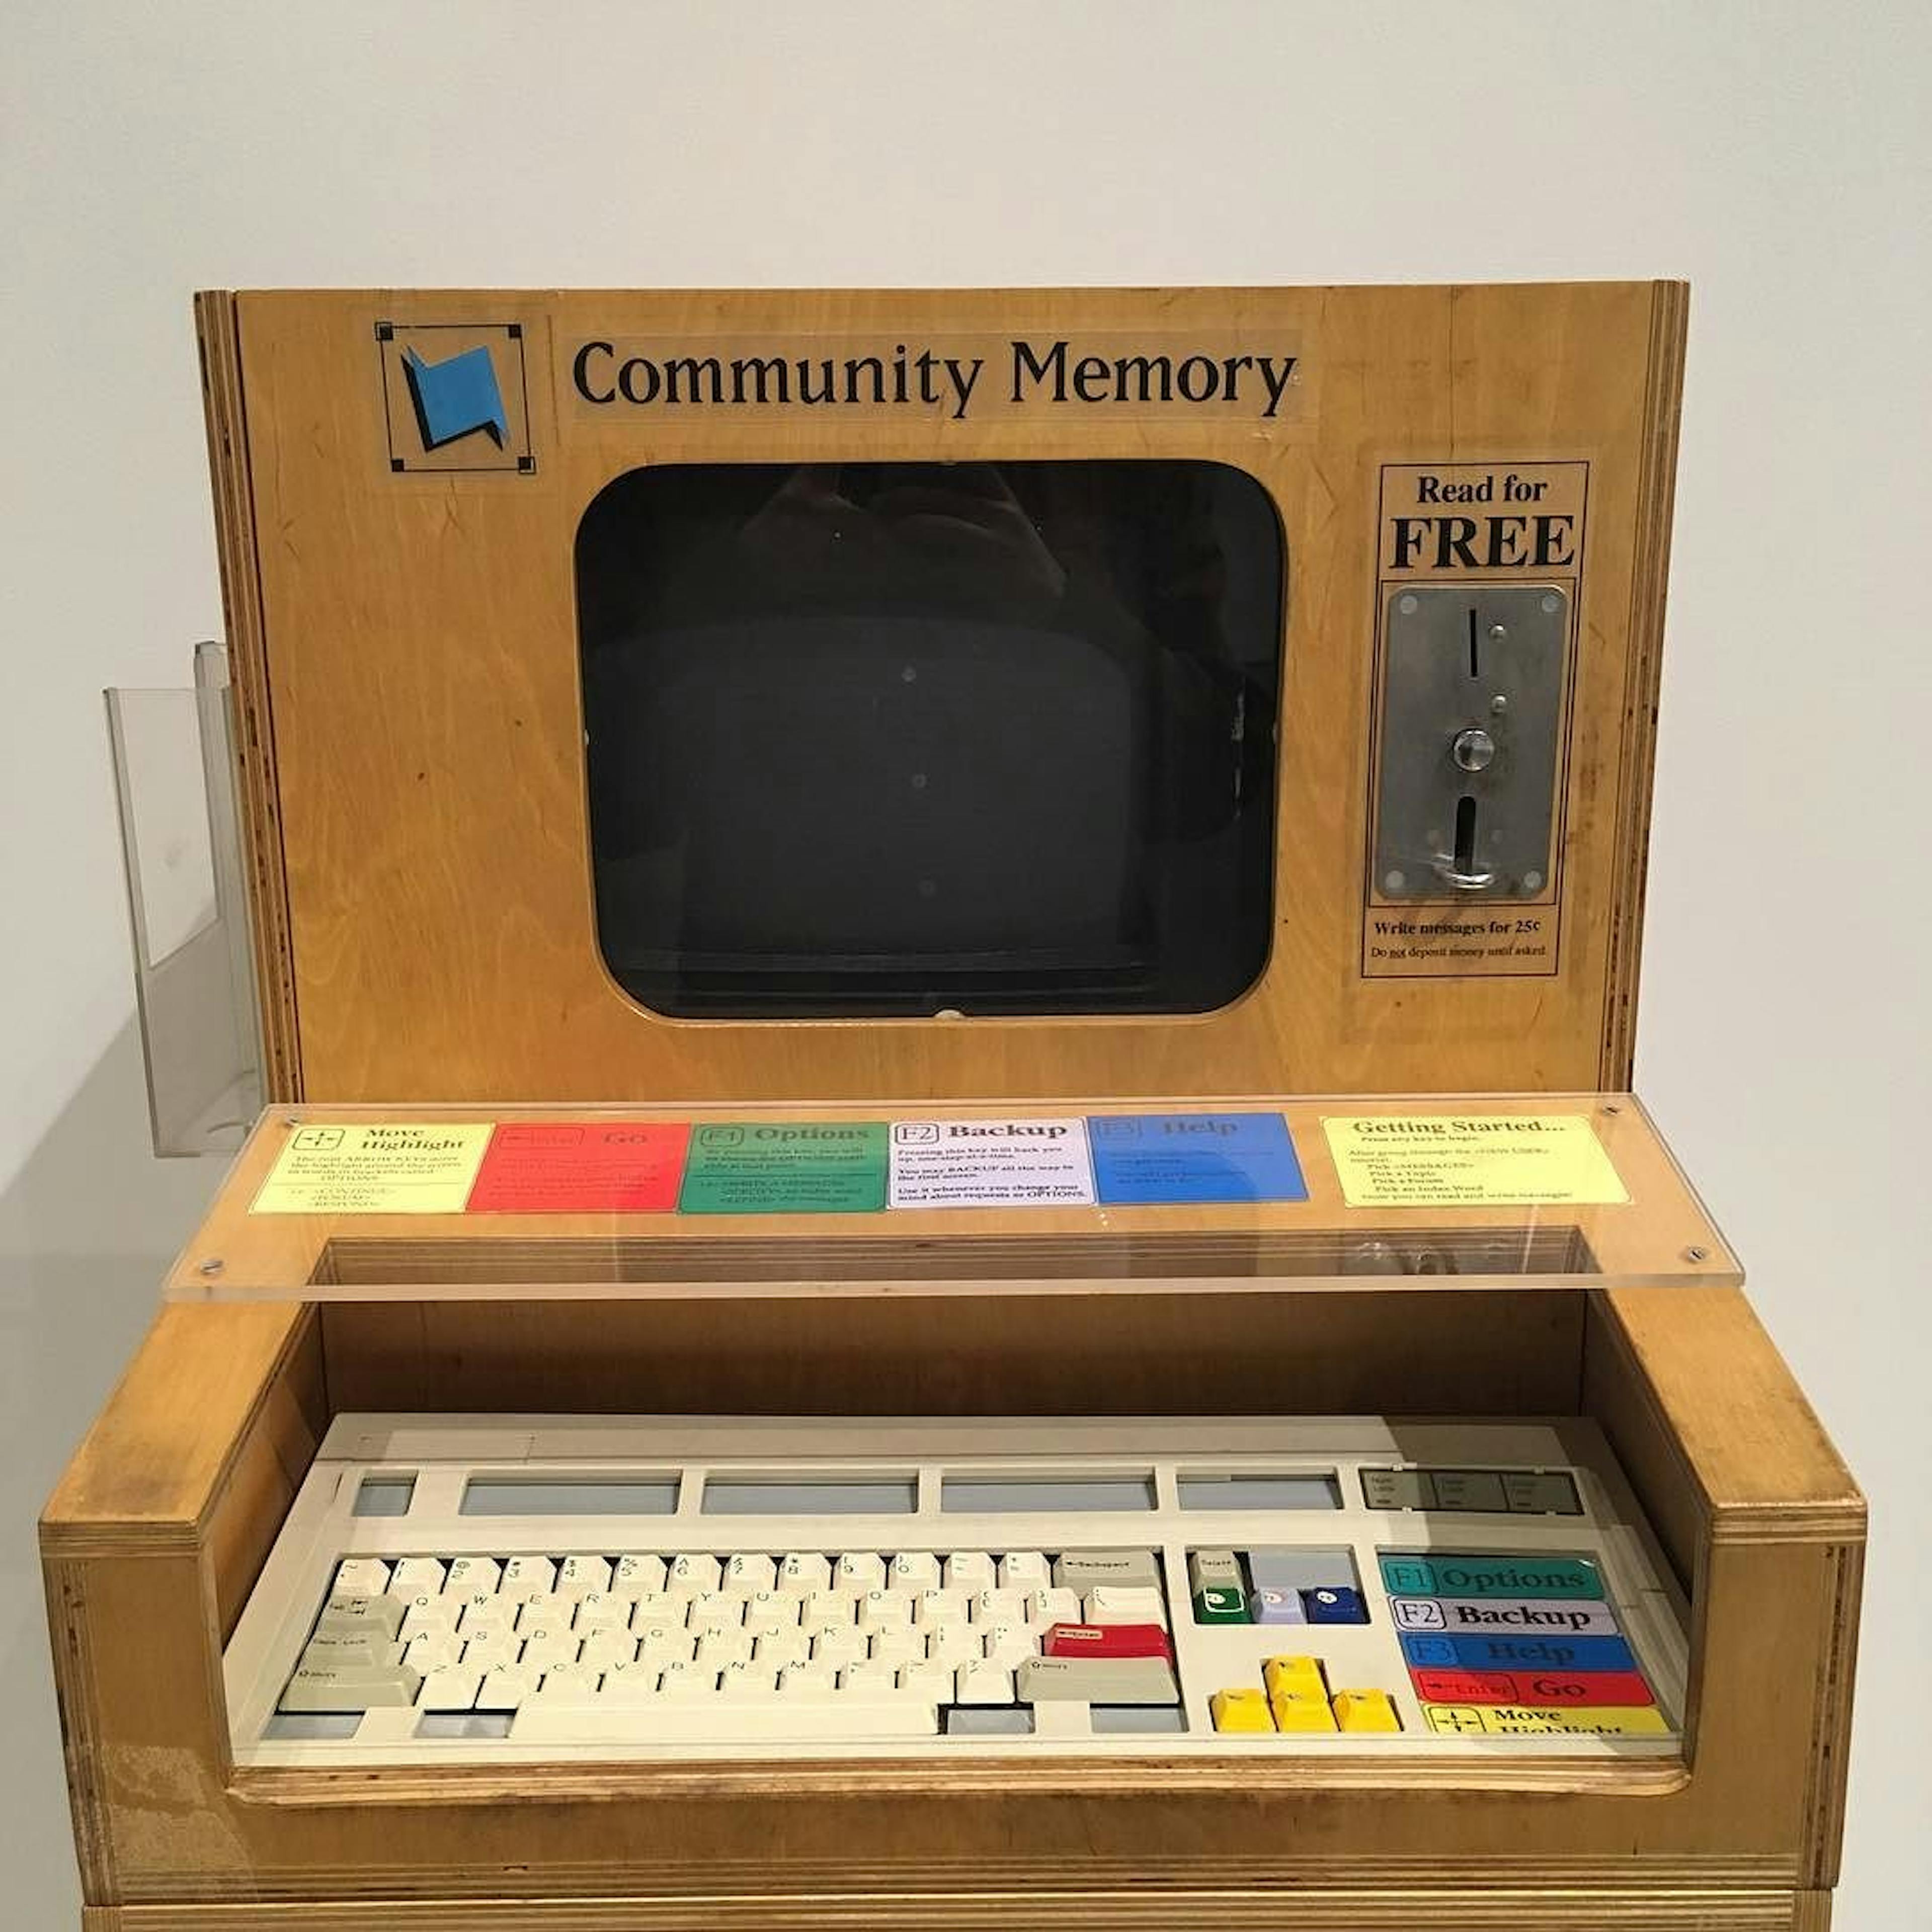 Community Memory Terminal im Computer History Museum (Kalifornien). Bild von Evan P. Cordes / Wikimedia